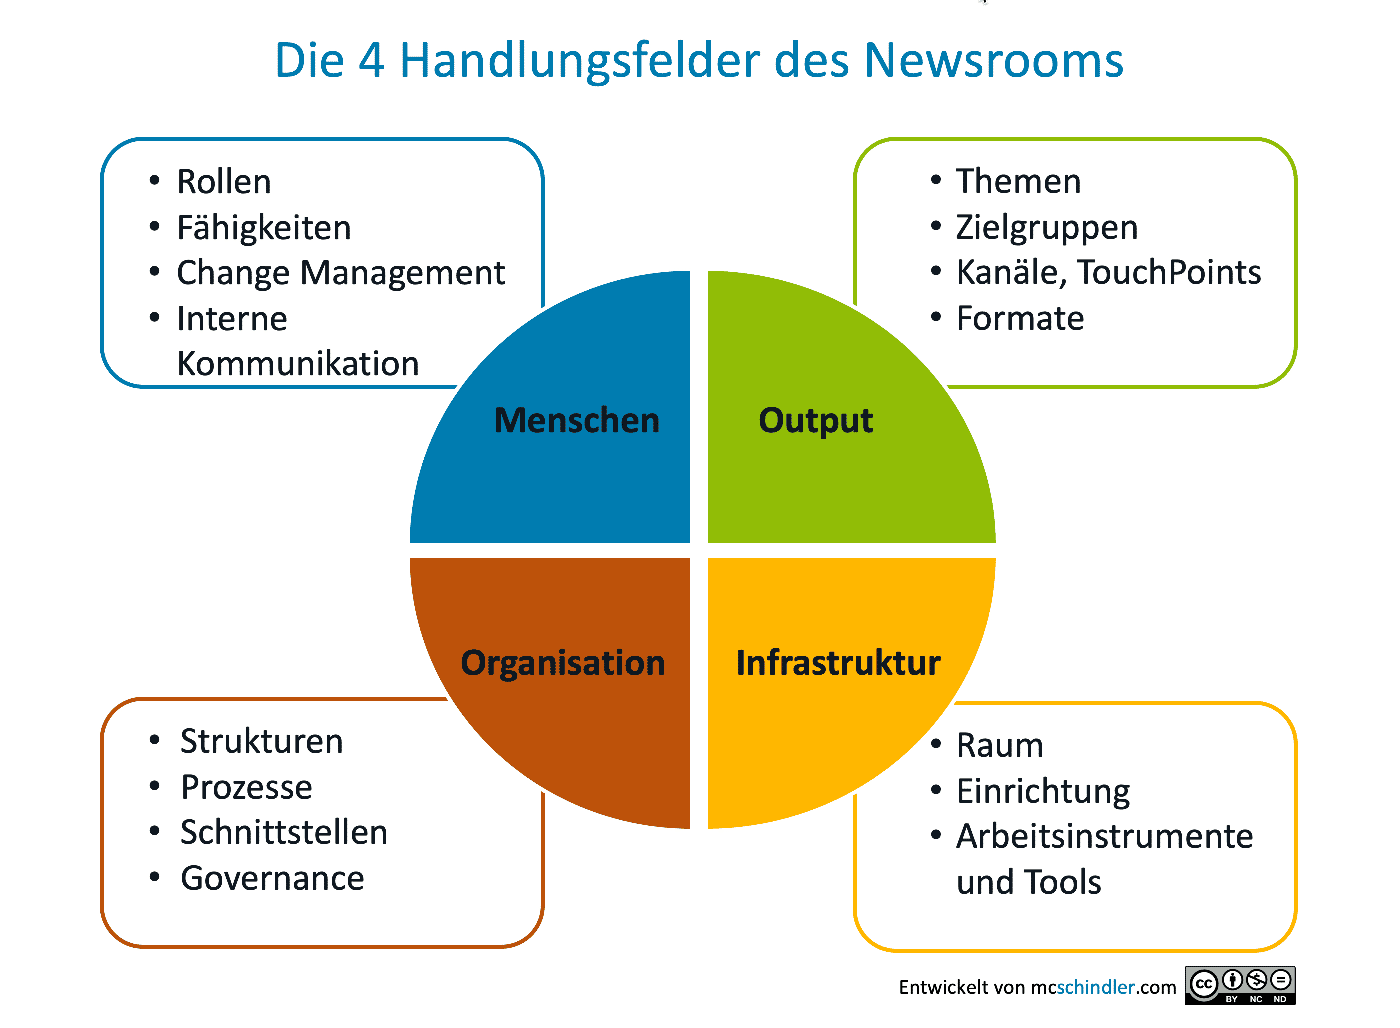 Die vier Handlungsfelder im Newsroom nach Schindler: Organisation, Infrastruktur, Menschen und Output